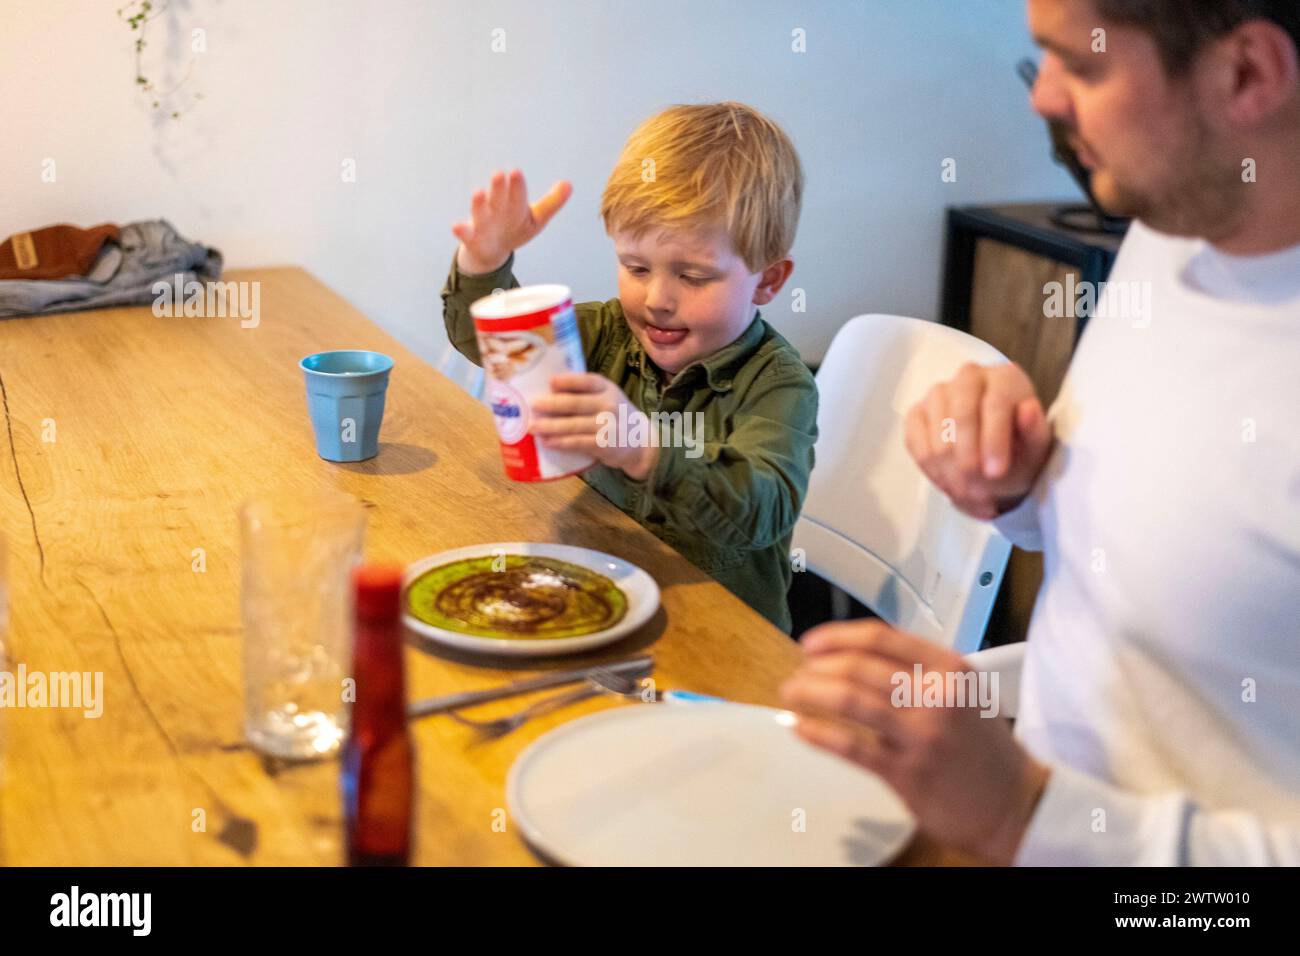 Das kleine Kind lernt aufgeregt, einen Salzstreuer während der Familienmahlzeit zu benutzen. Stockfoto